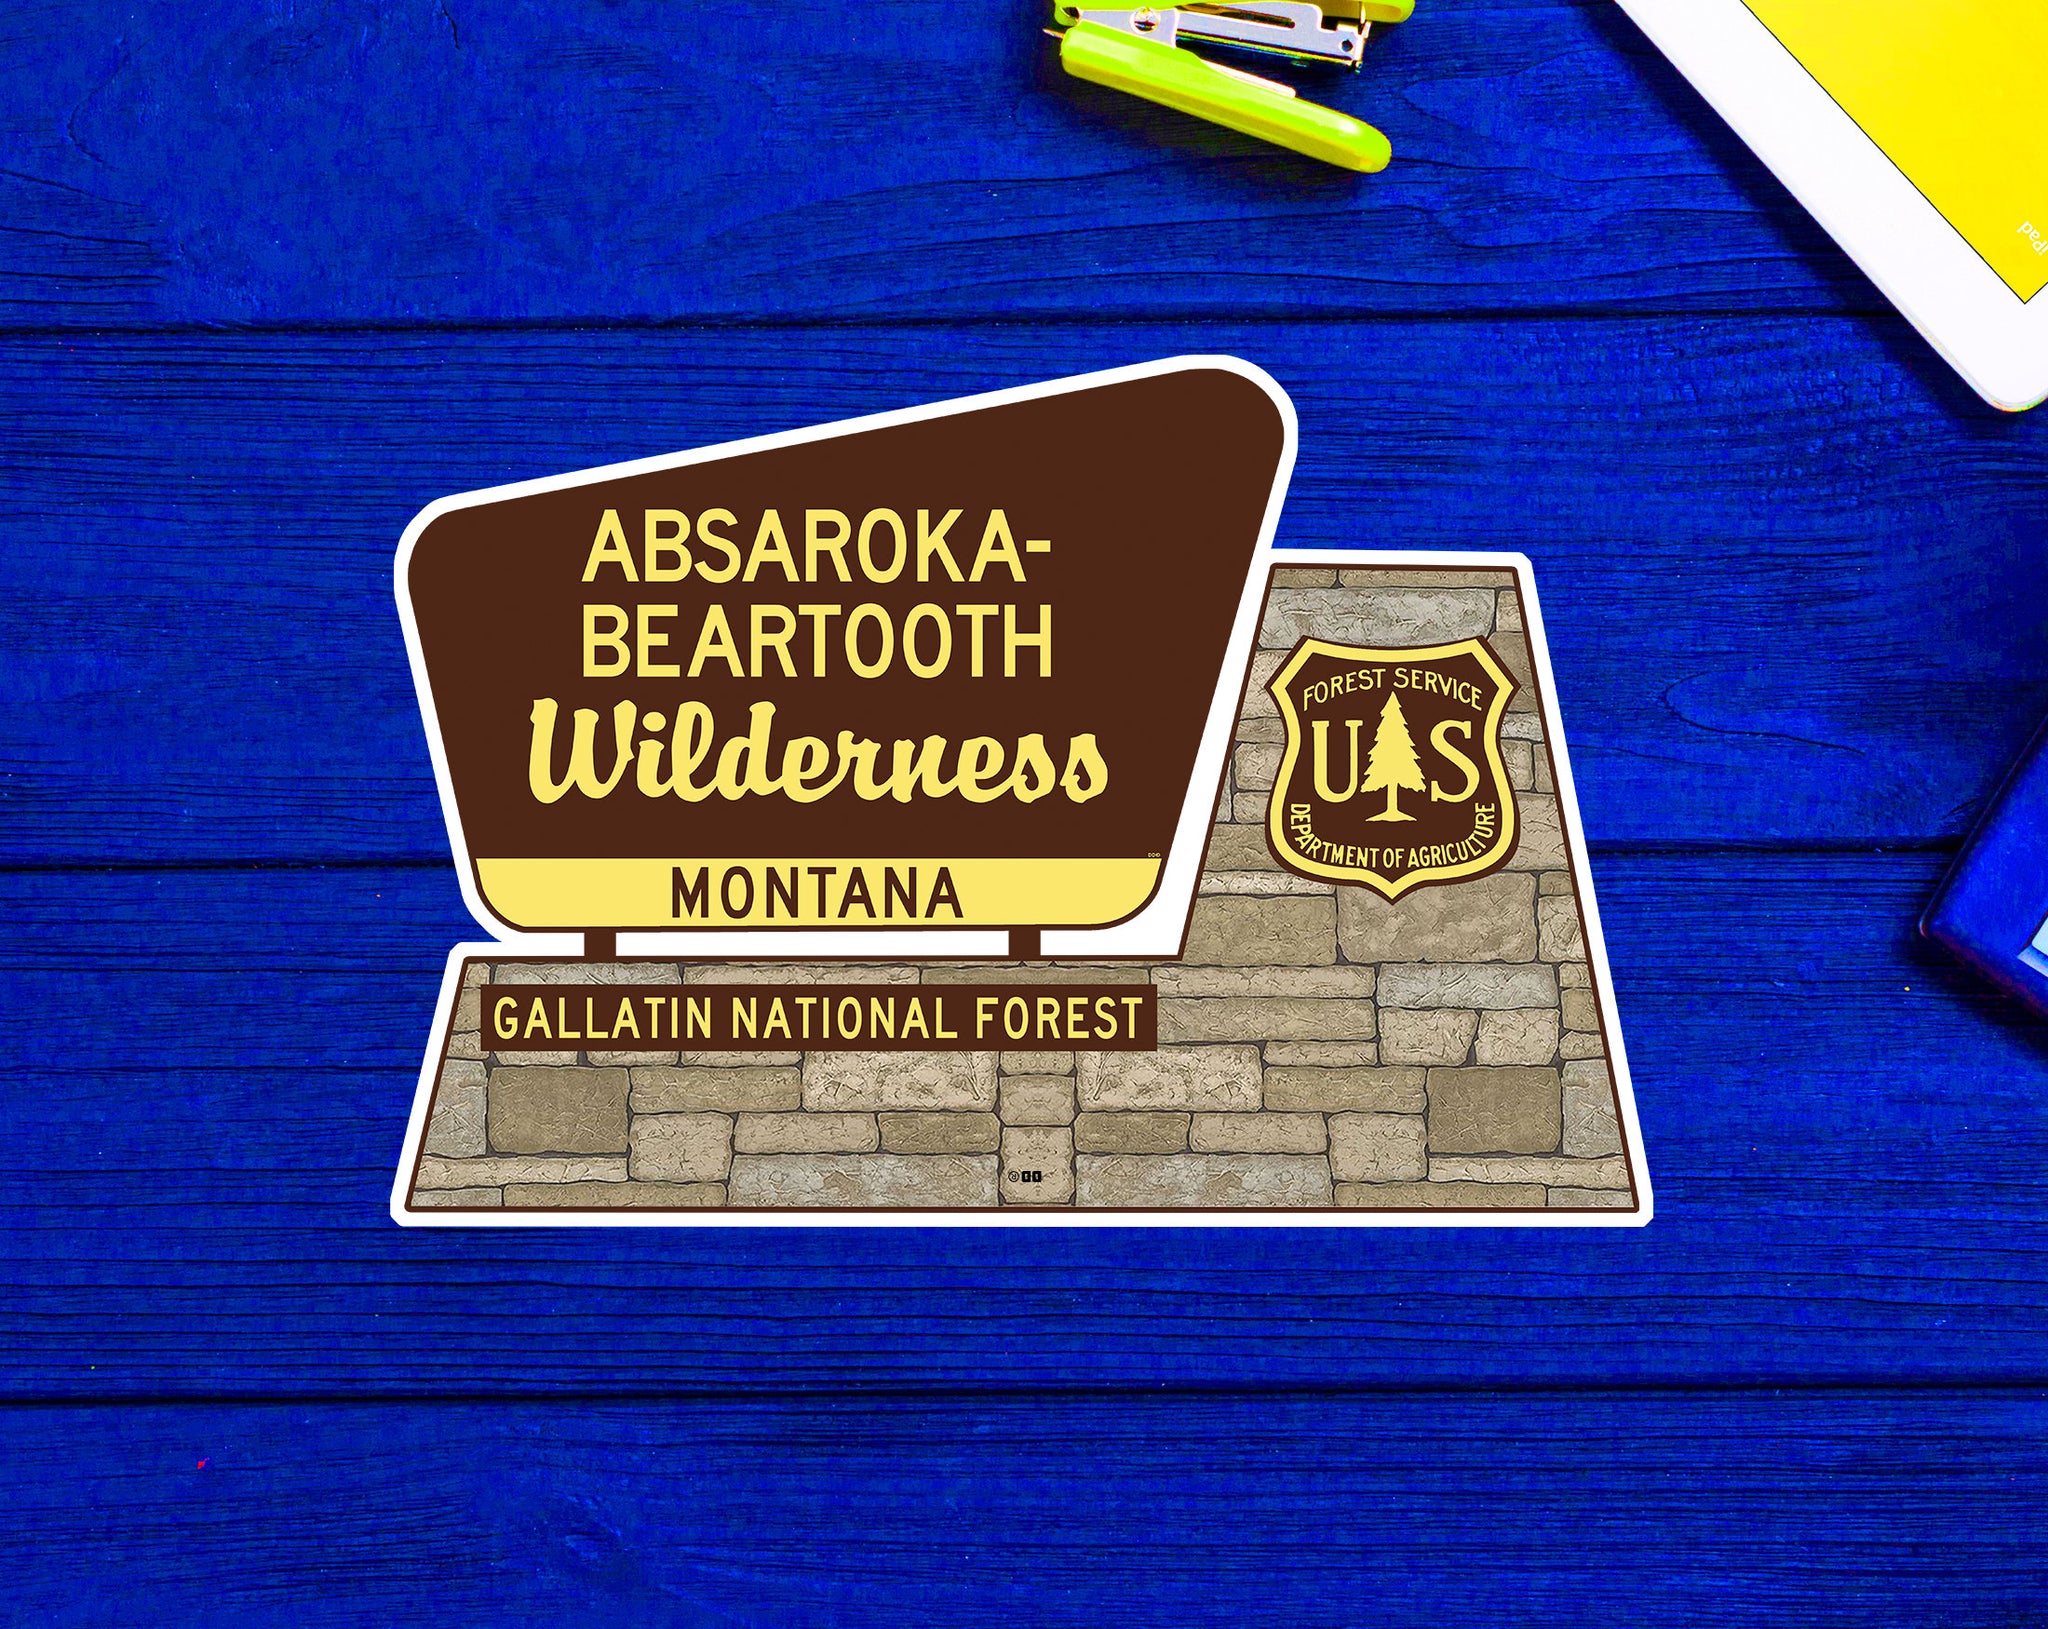 Absaroka Beartooth Wilderness Gallatin National Forest Montana Sign Sticker 4"